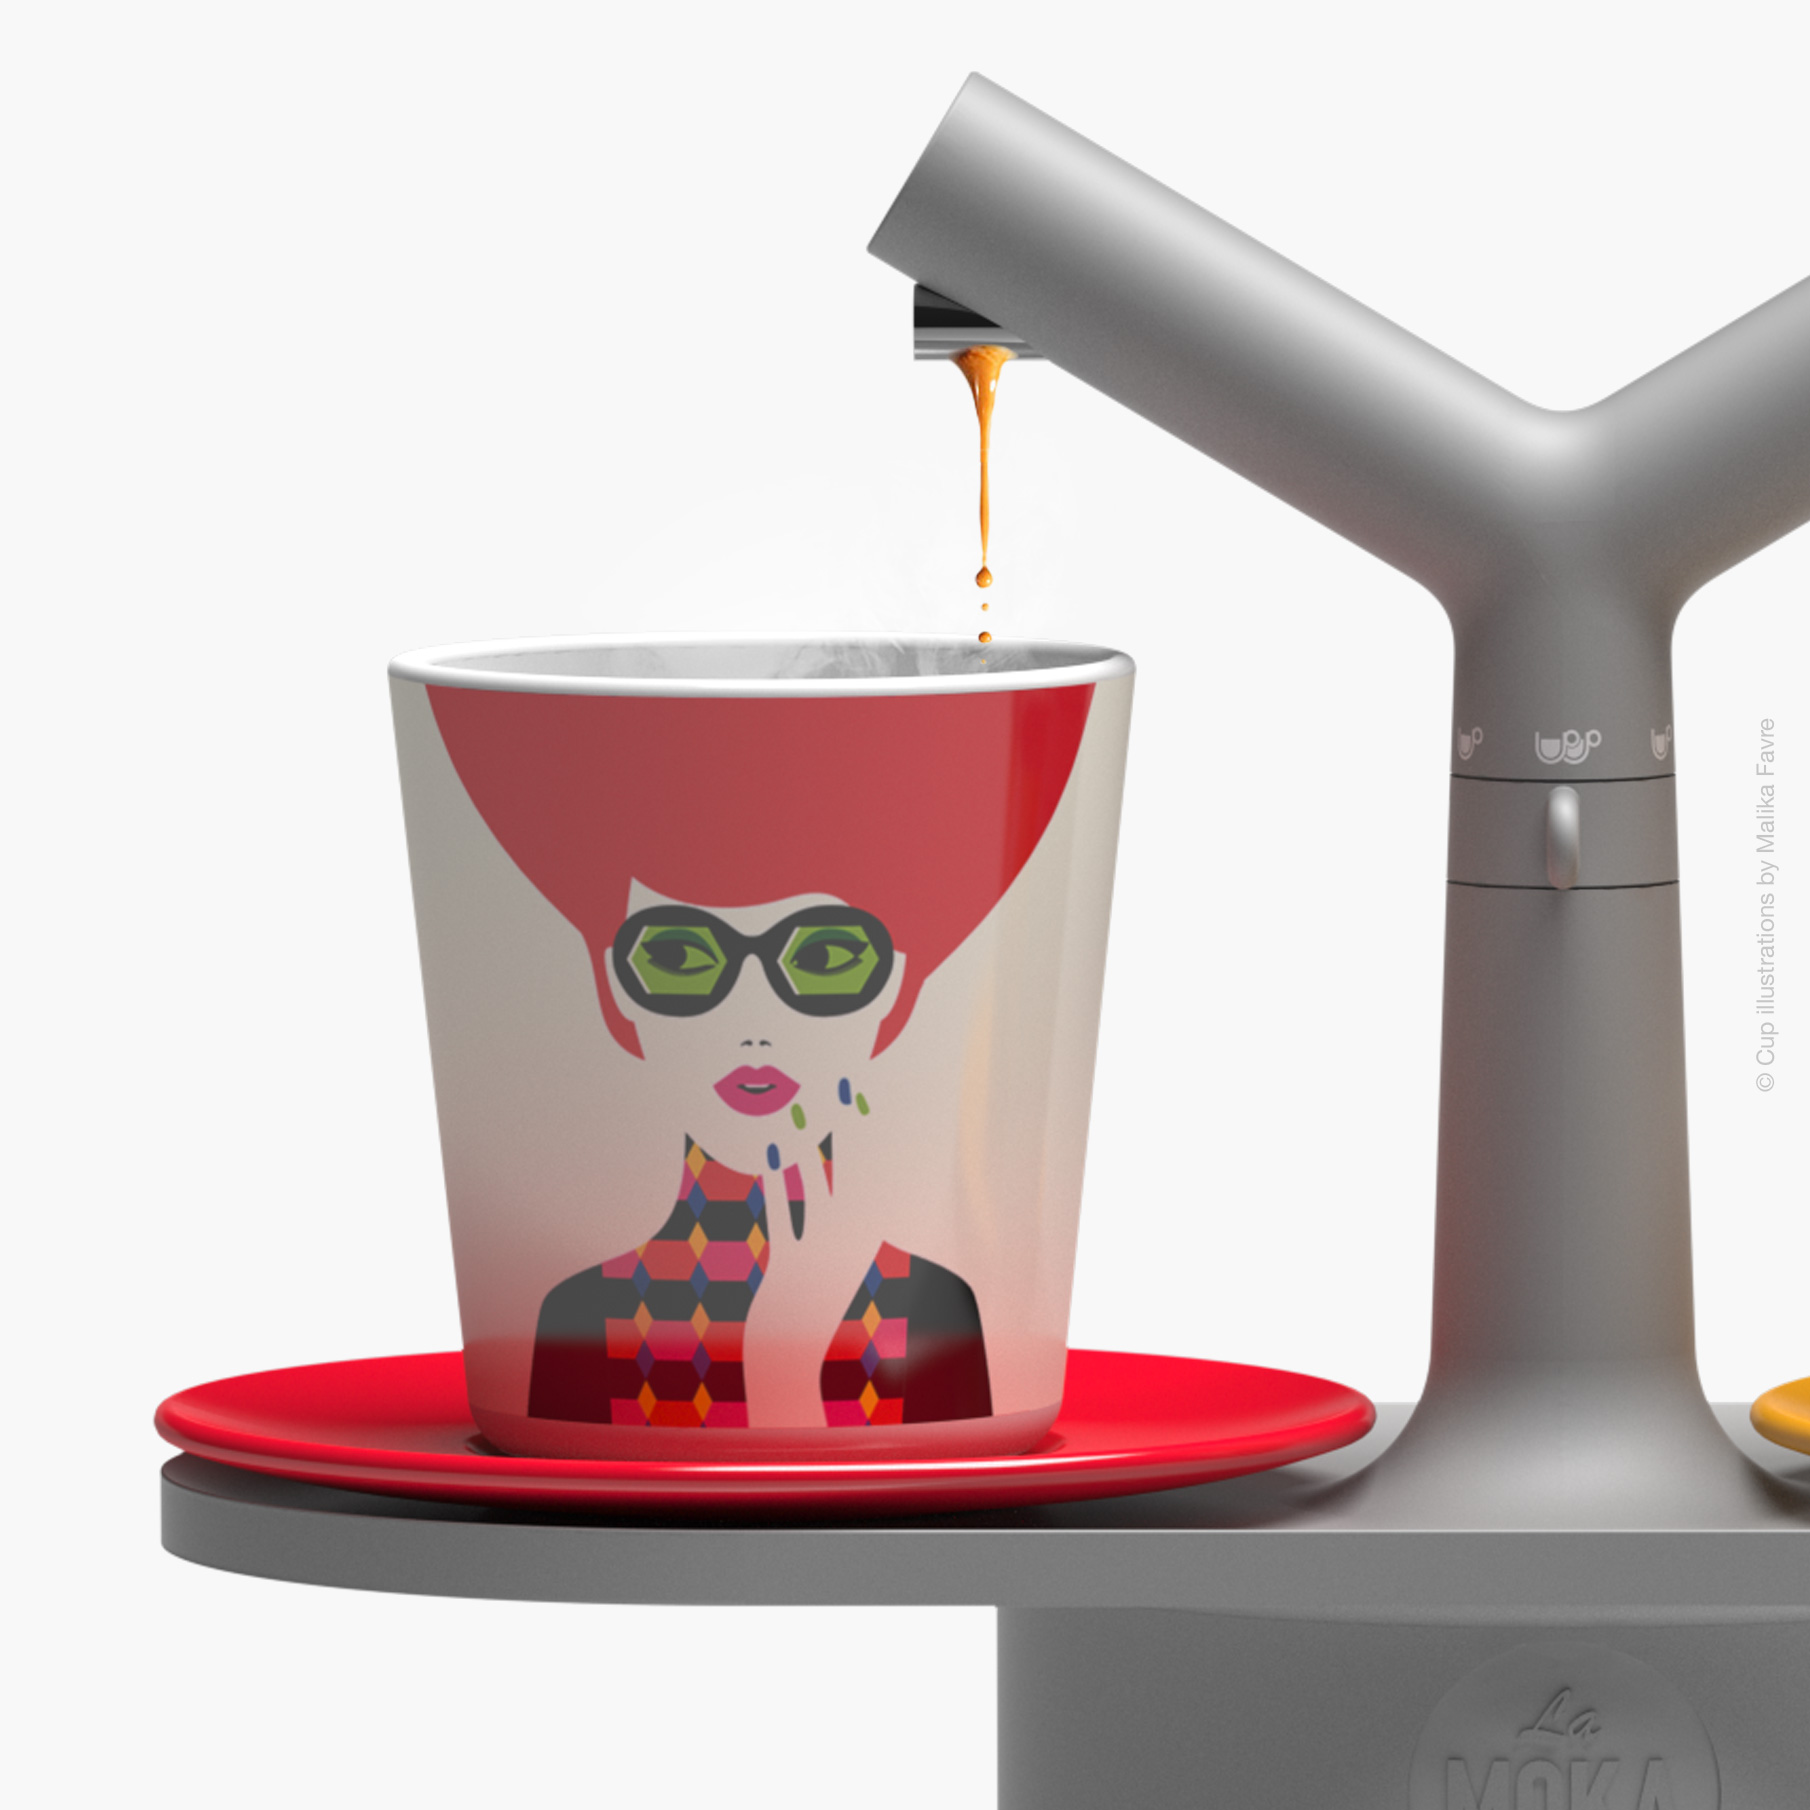 La MoKa Coffee Maker | Cup | Detail View